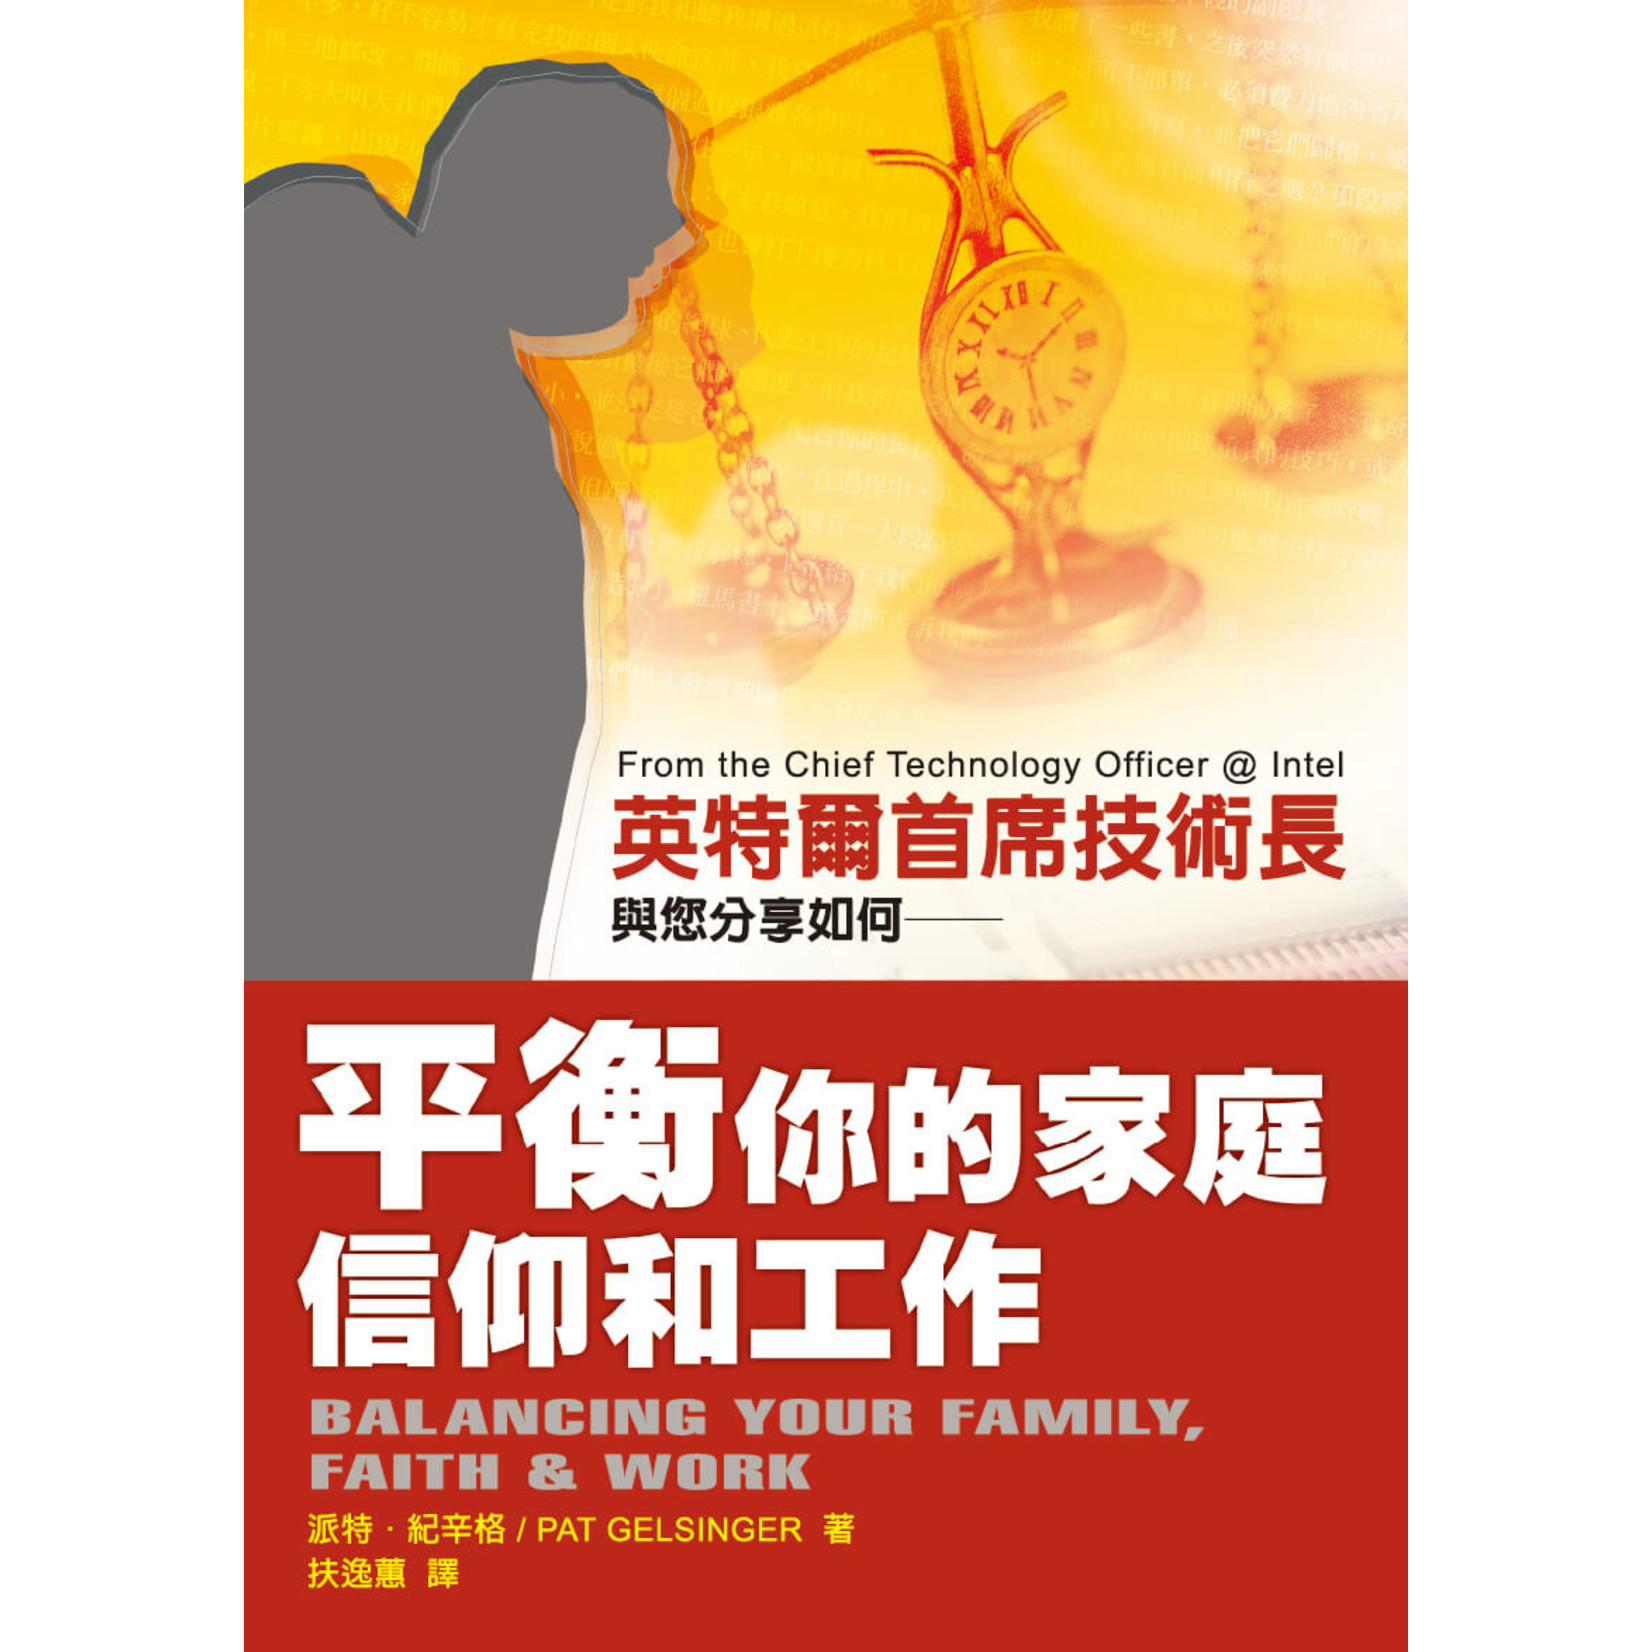 中國學園傳道會 Taiwan Campus Crusade for Christ 平衡你的家庭信仰和工作 Balancing Your Family, Faith and Work